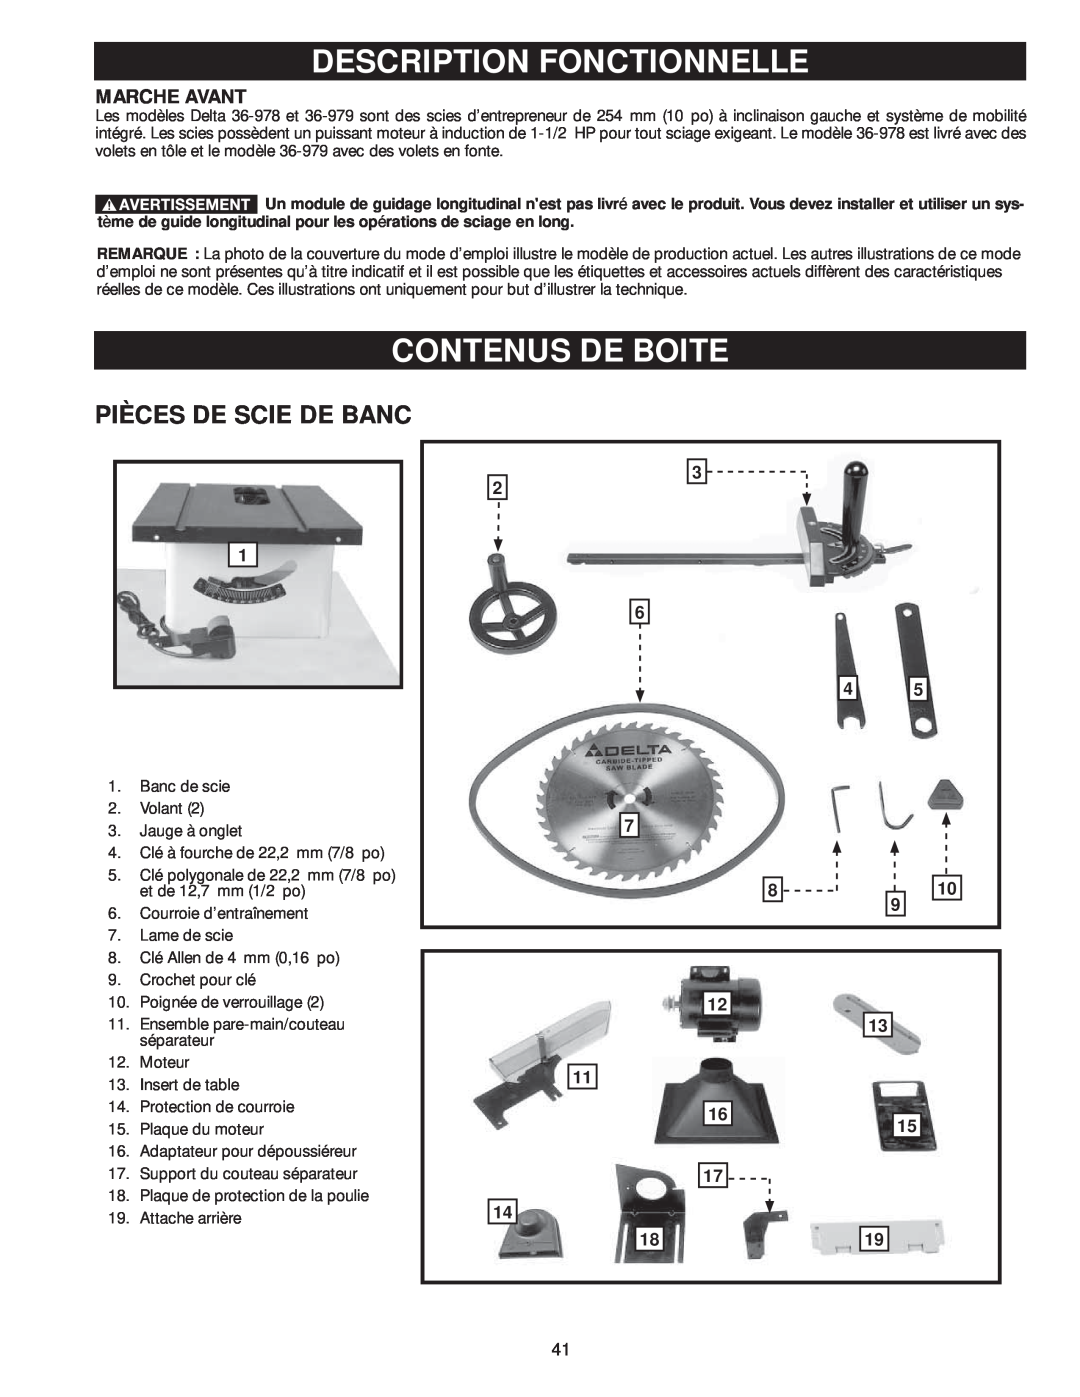 Delta 36-978, 36-979 instruction manual Description Fonctionnelle, Contenus De Boite, Pièces De Scie De Banc, Marche Avant 